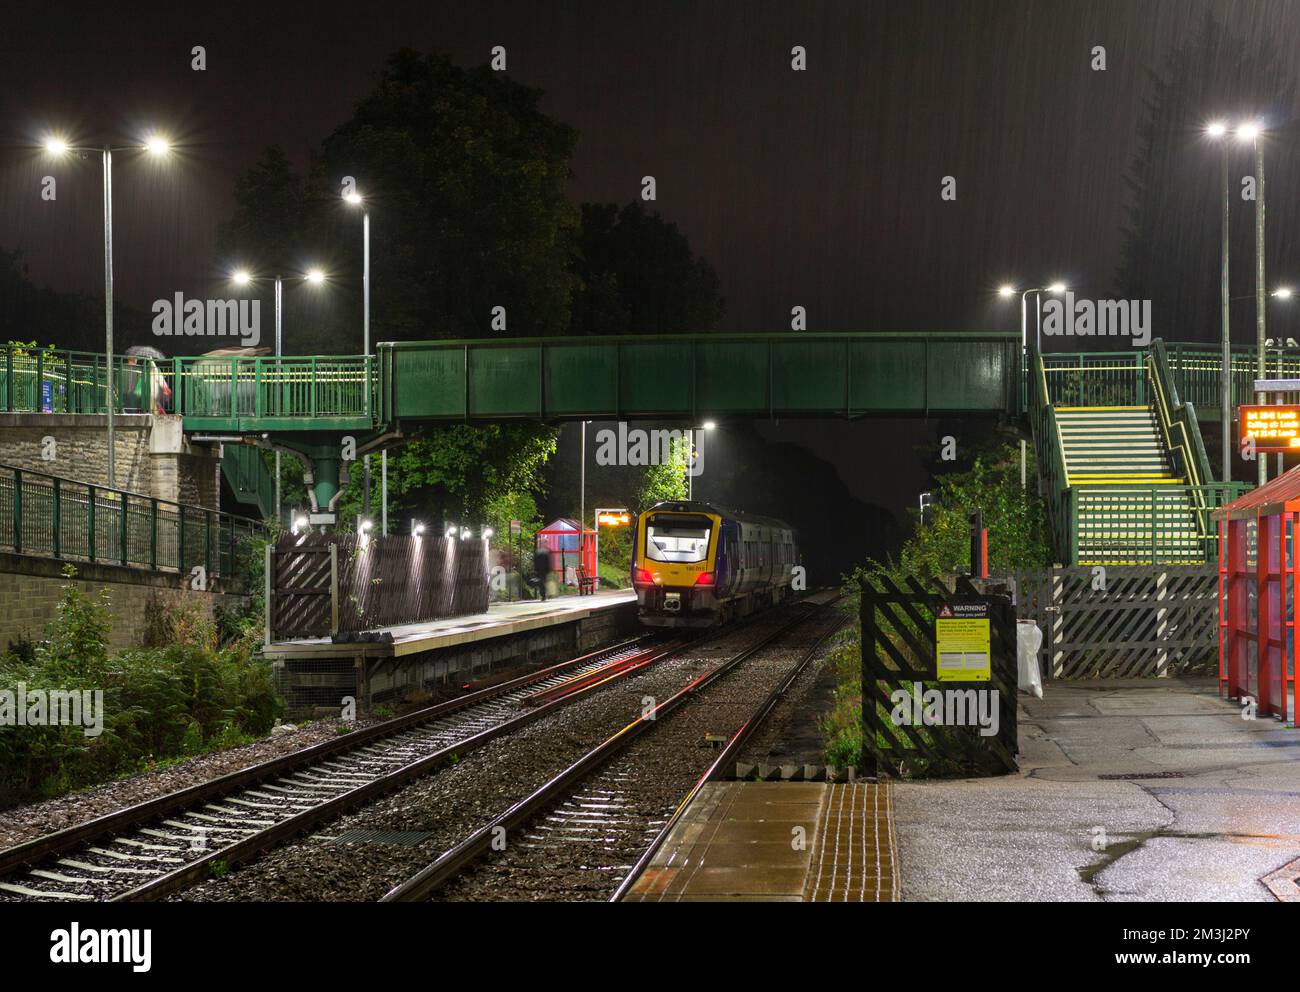 Stazione ferroviaria di Woodlesford, Yorkshire, Regno Unito. Un treno di classe 195 della ferrovia del Nord chiama in una notte bagnata al buio Foto Stock